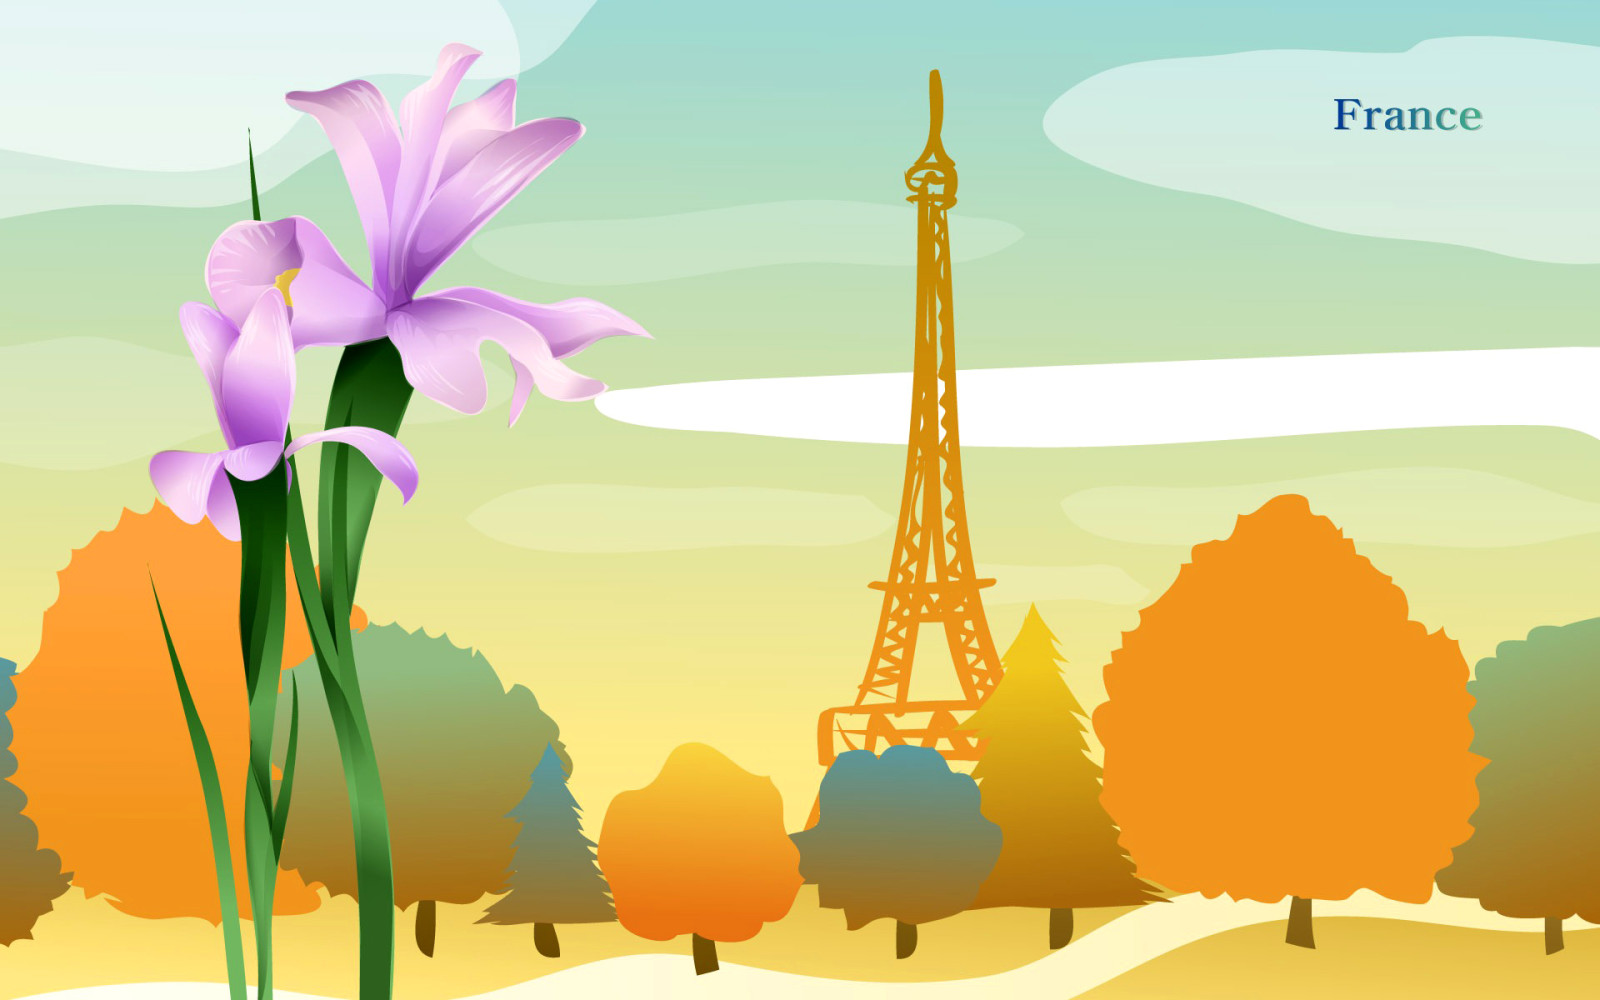 ฤดูใบไม้ร่วง, เมือง, ต้นไม้, ดอกไม้, ฝรั่งเศส, การท่องเที่ยว, หอคอย, ประเทศ